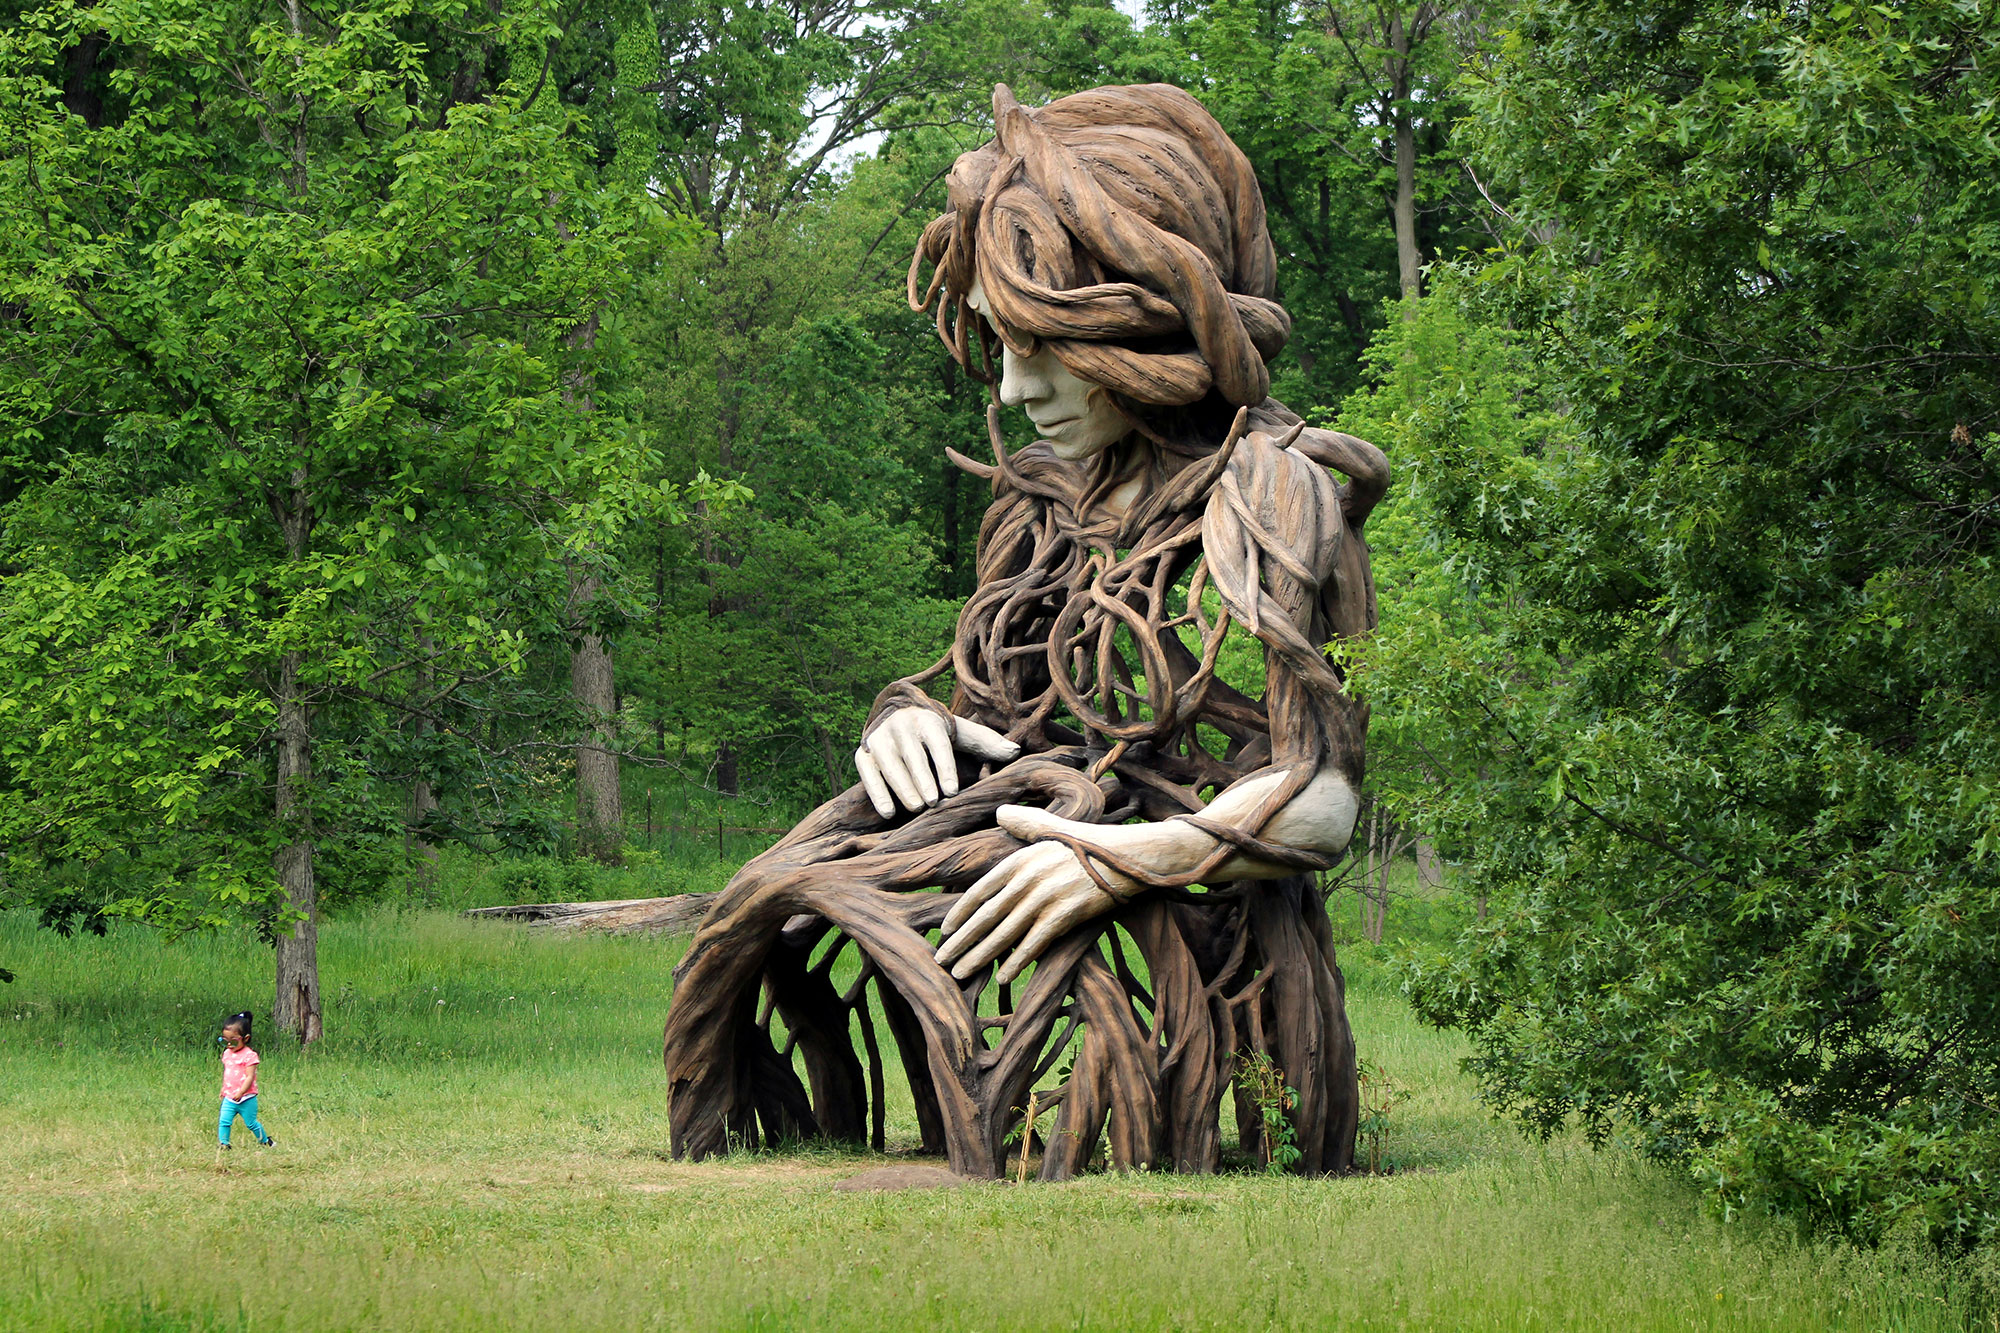 Скульптура Дэниела Поппера "UMI" (слово означает «жизнь» на суахили и «мать на арабском) в Дендрарии Мортона. Высота 6,1 метра. 2021 год. Источник изображения: The Morton Arboretum